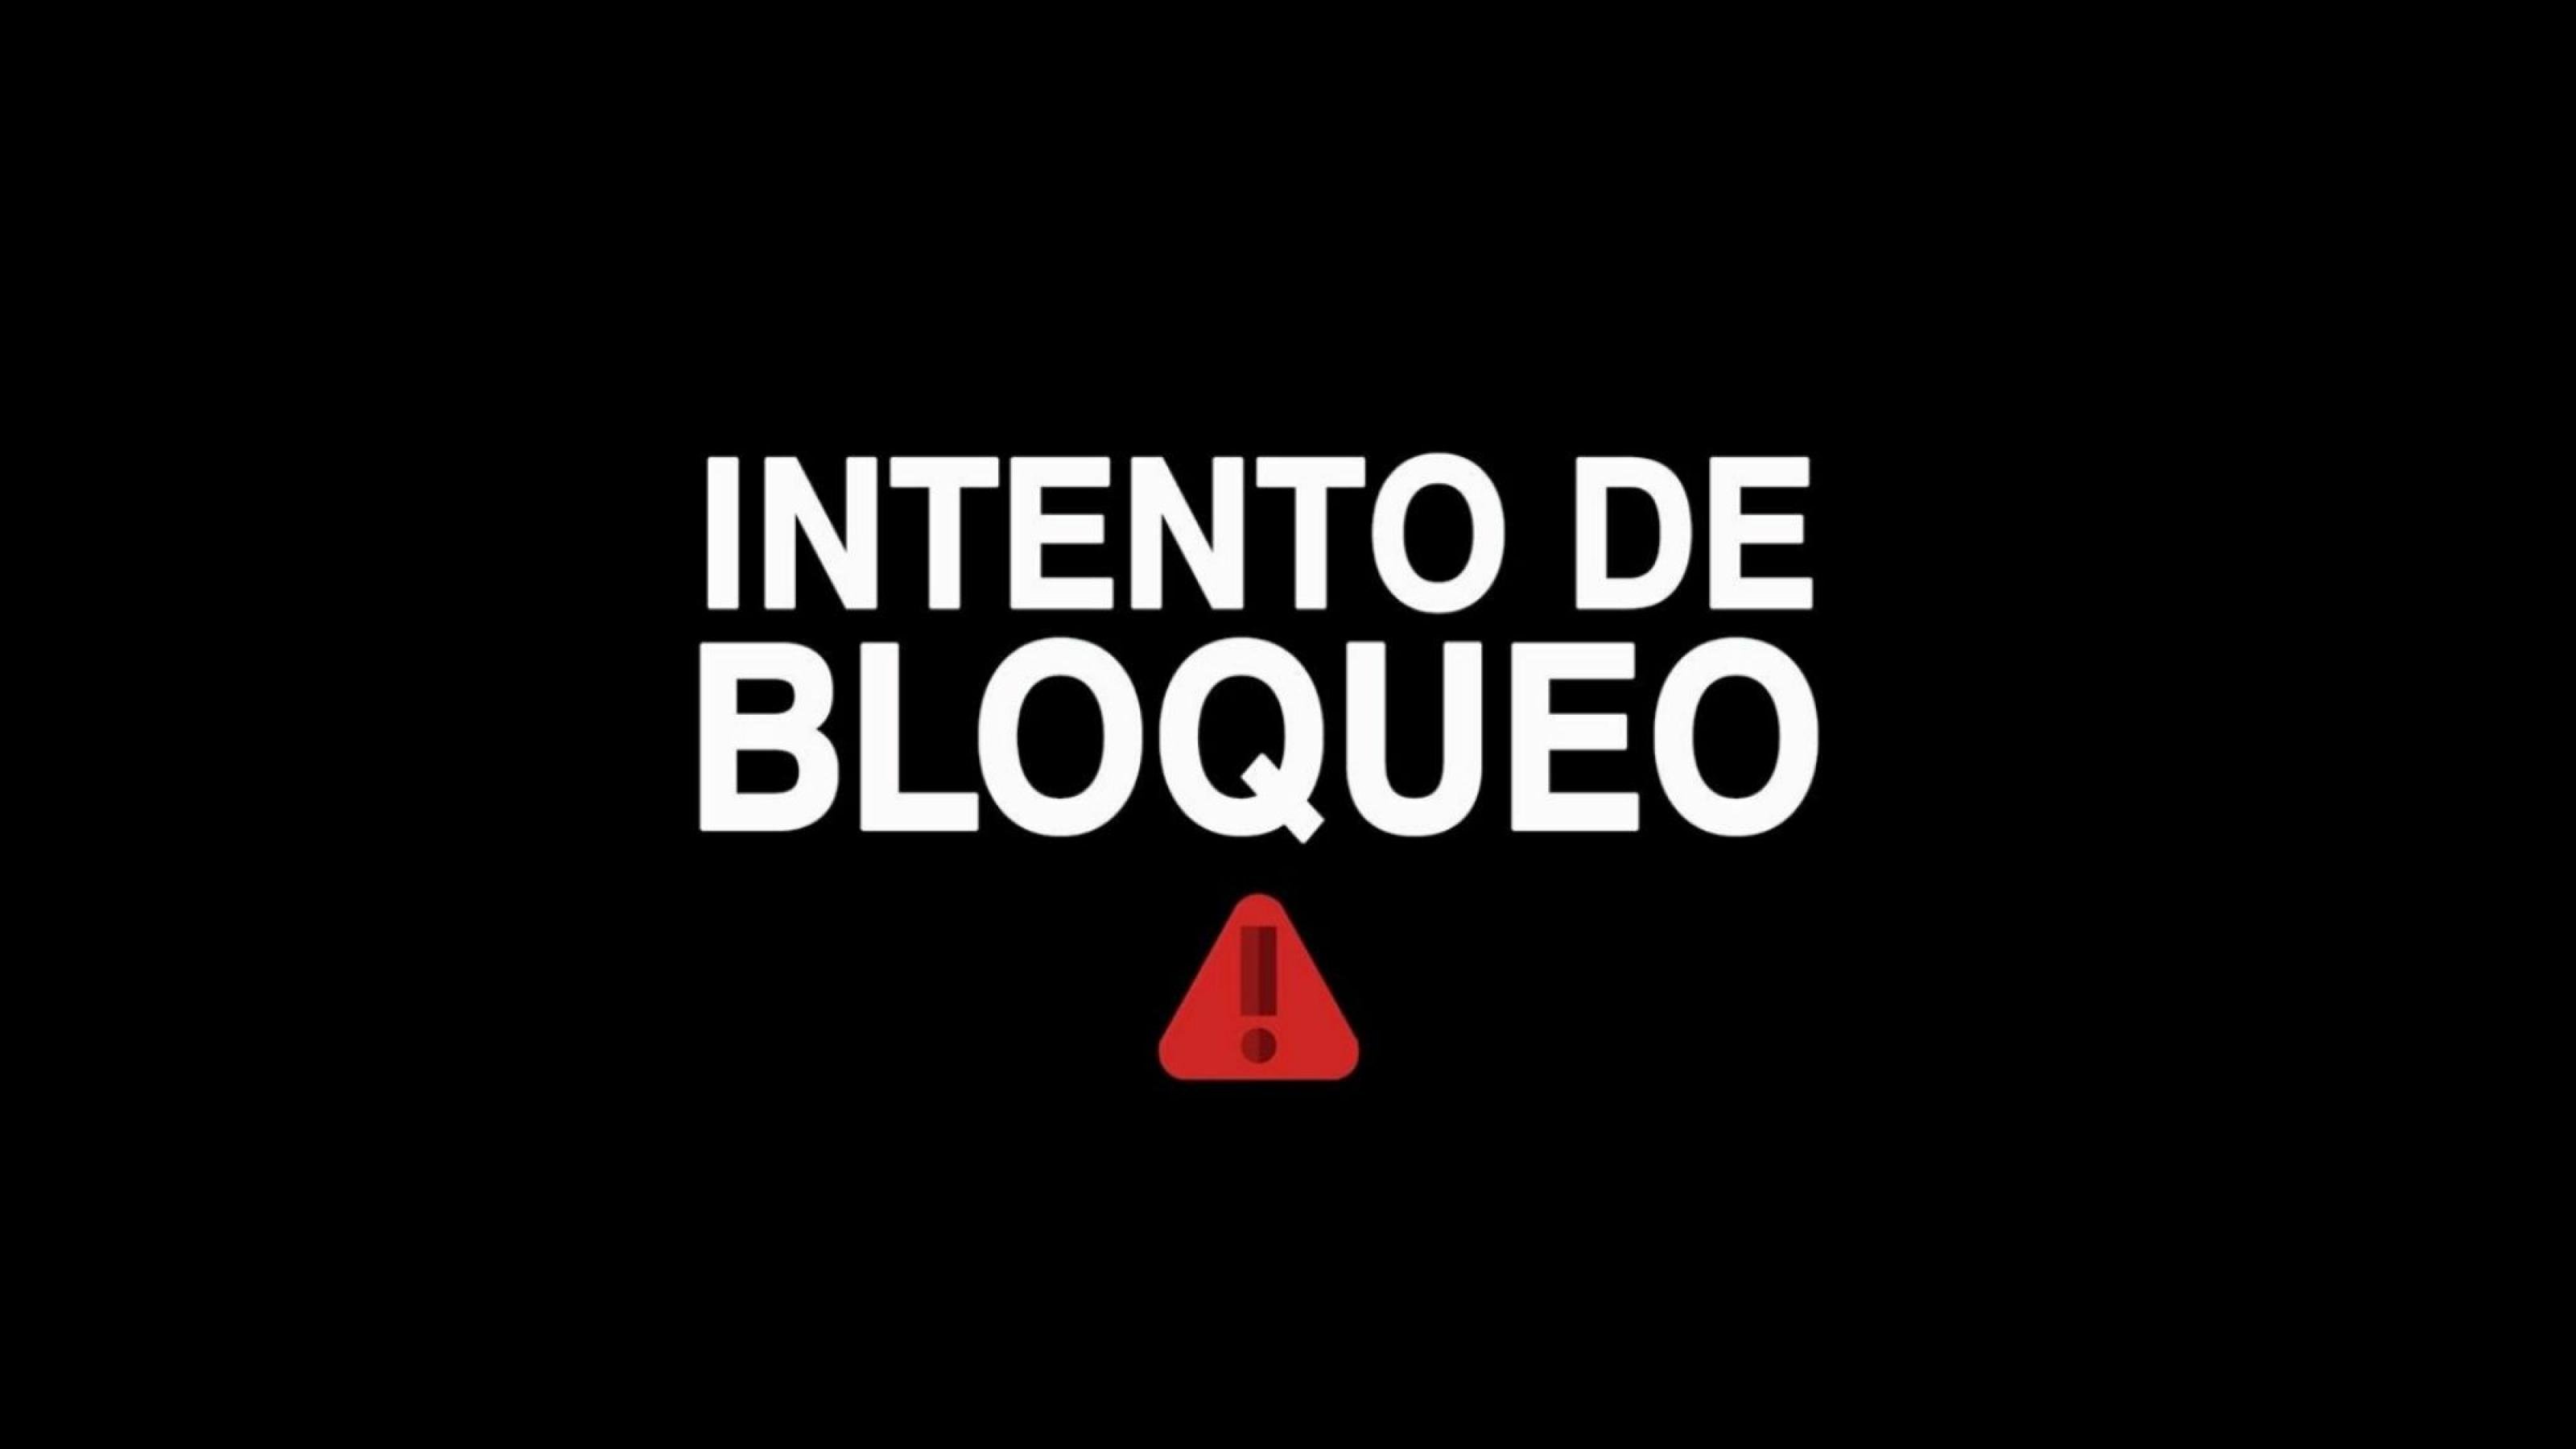 Auf einer sonst schwarzen Seite steht in Weiß „Intento de bloqueo“, darunter ein rotes Warn-Dreieck.